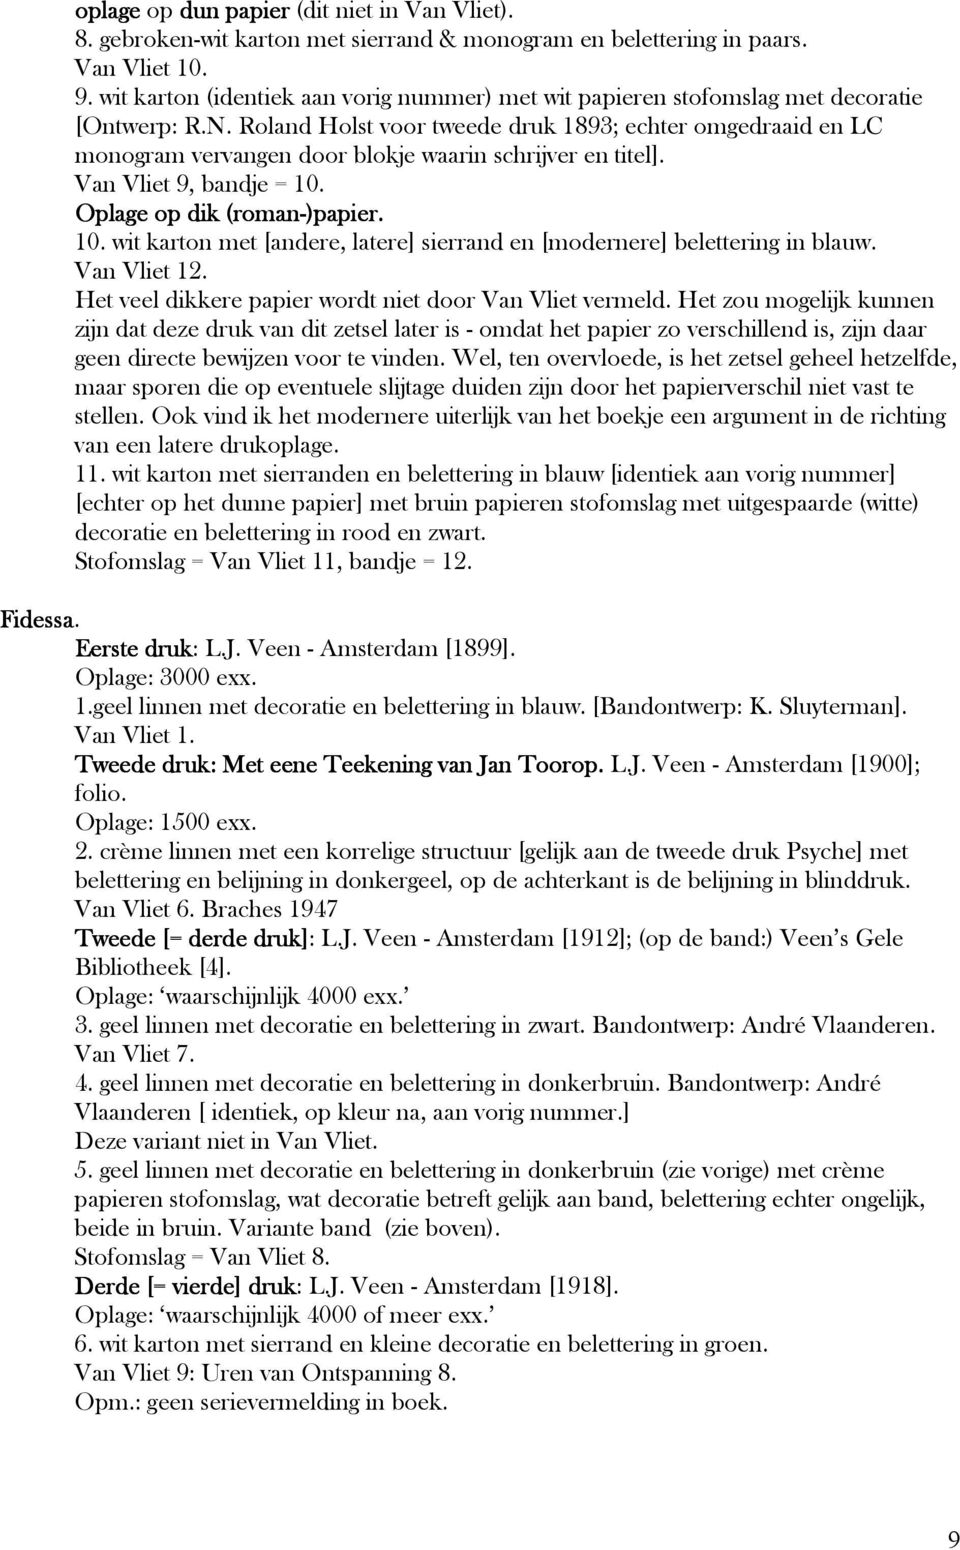 Roland Holst voor tweede druk 1893; echter omgedraaid en LC monogram vervangen door blokje waarin schrijver en titel]. Van Vliet 9, bandje = 10.